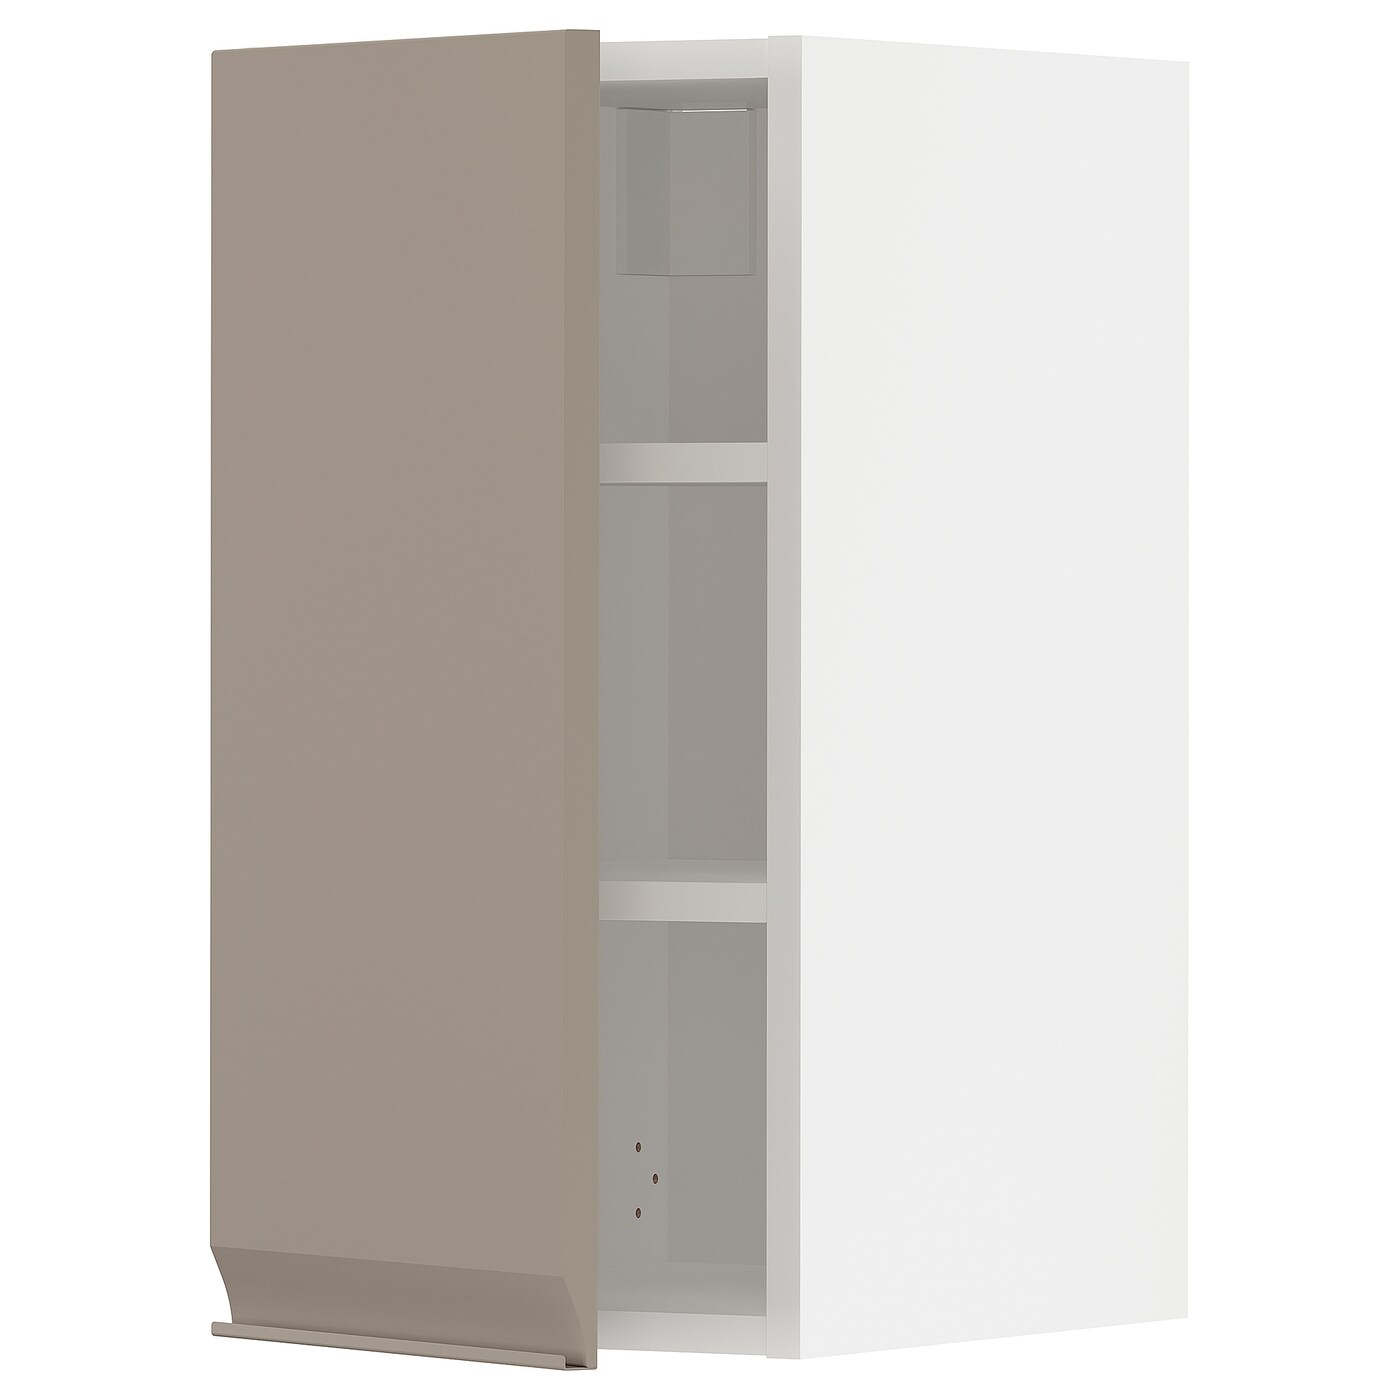 Навесной шкаф с полкой - METOD IKEA/ МЕТОД ИКЕА, 30х60 см, белый/светло-коричневый